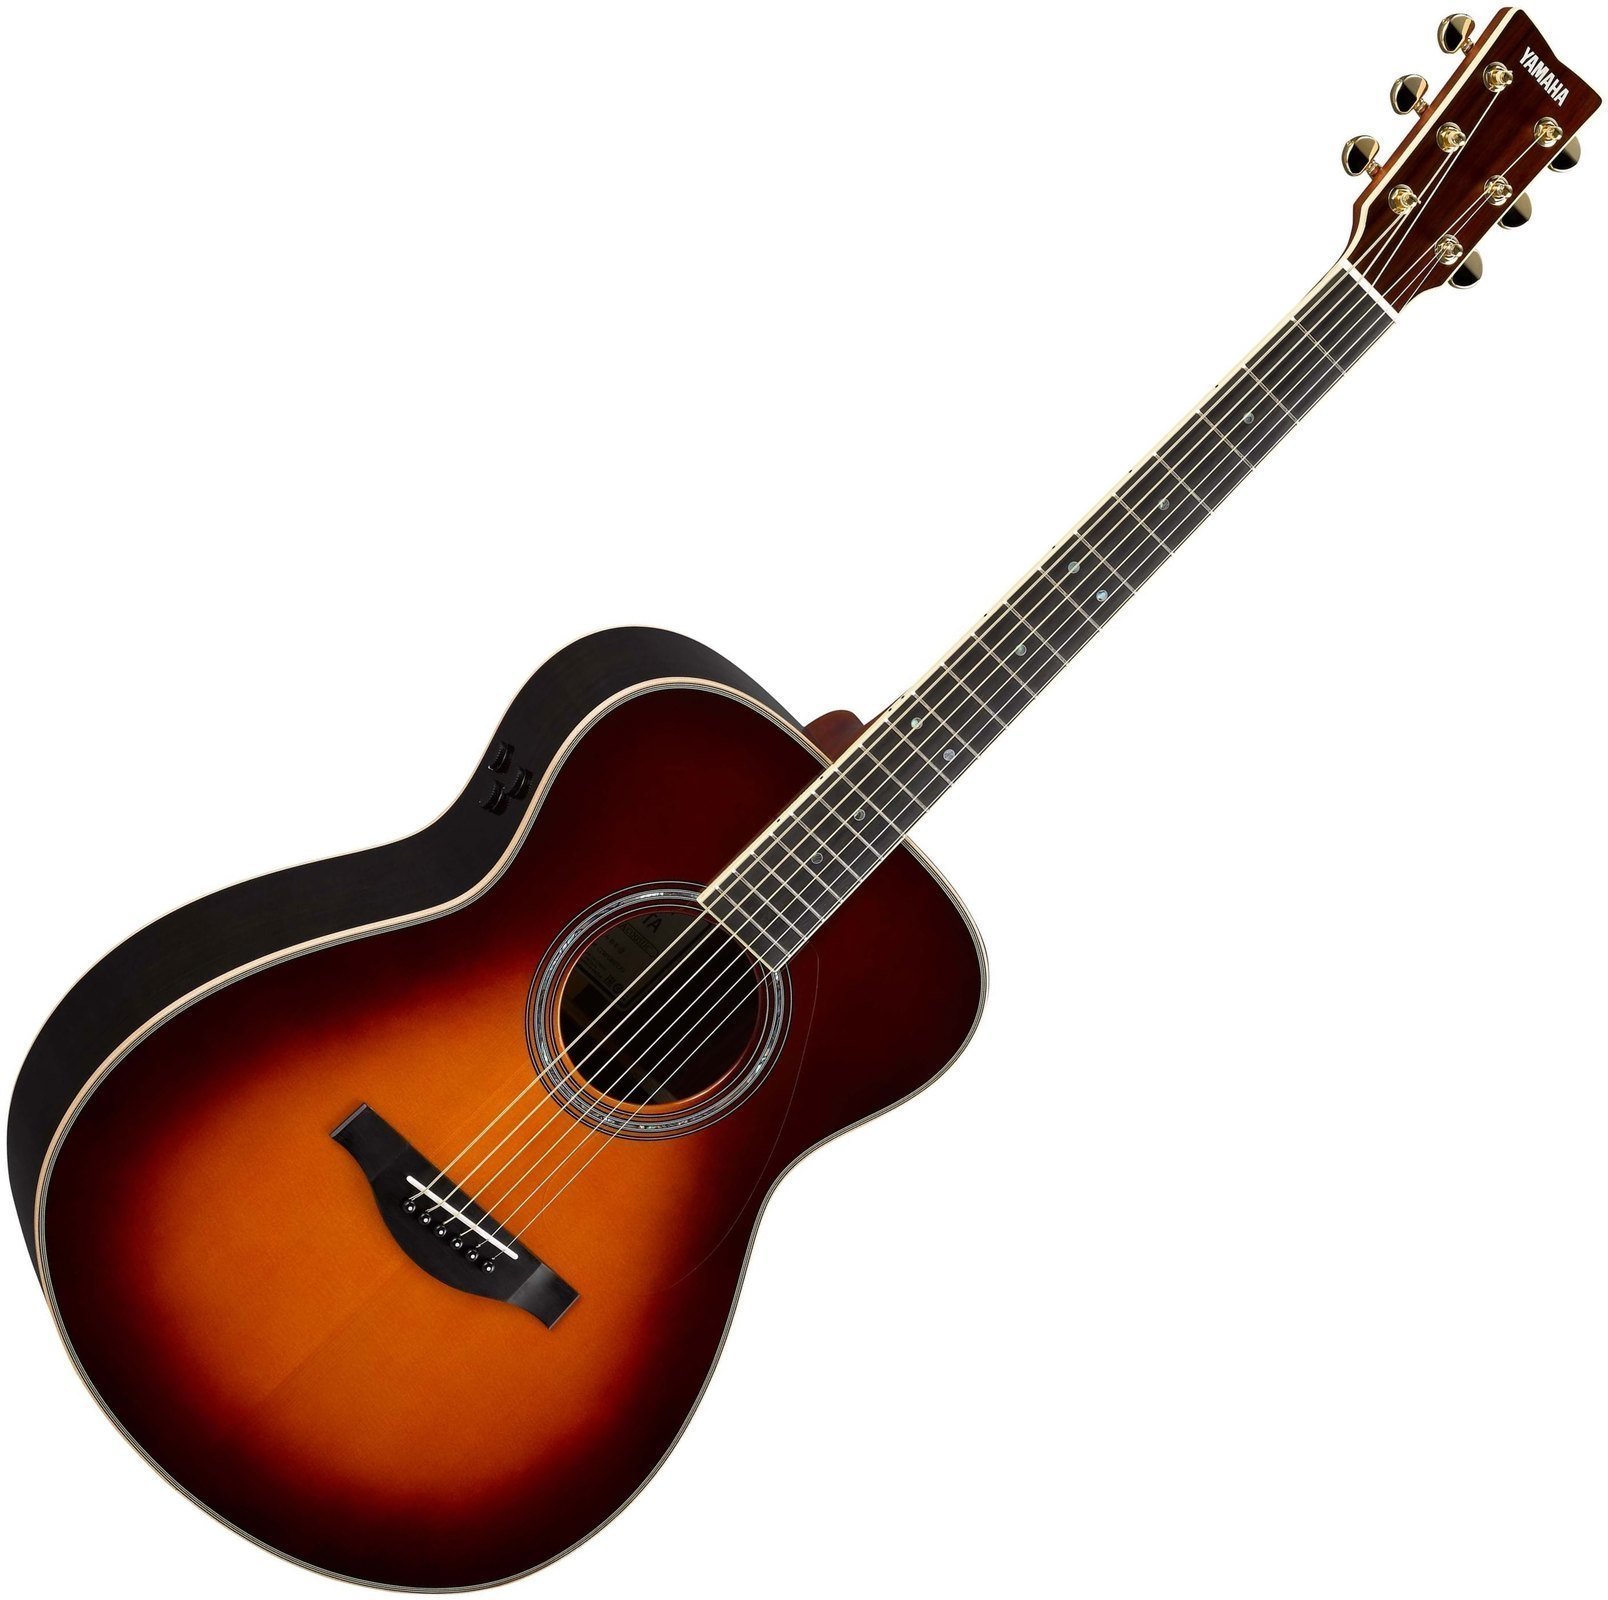 Jumbo elektro-akoestische gitaar Yamaha LS-TA BS Brown Sunburst